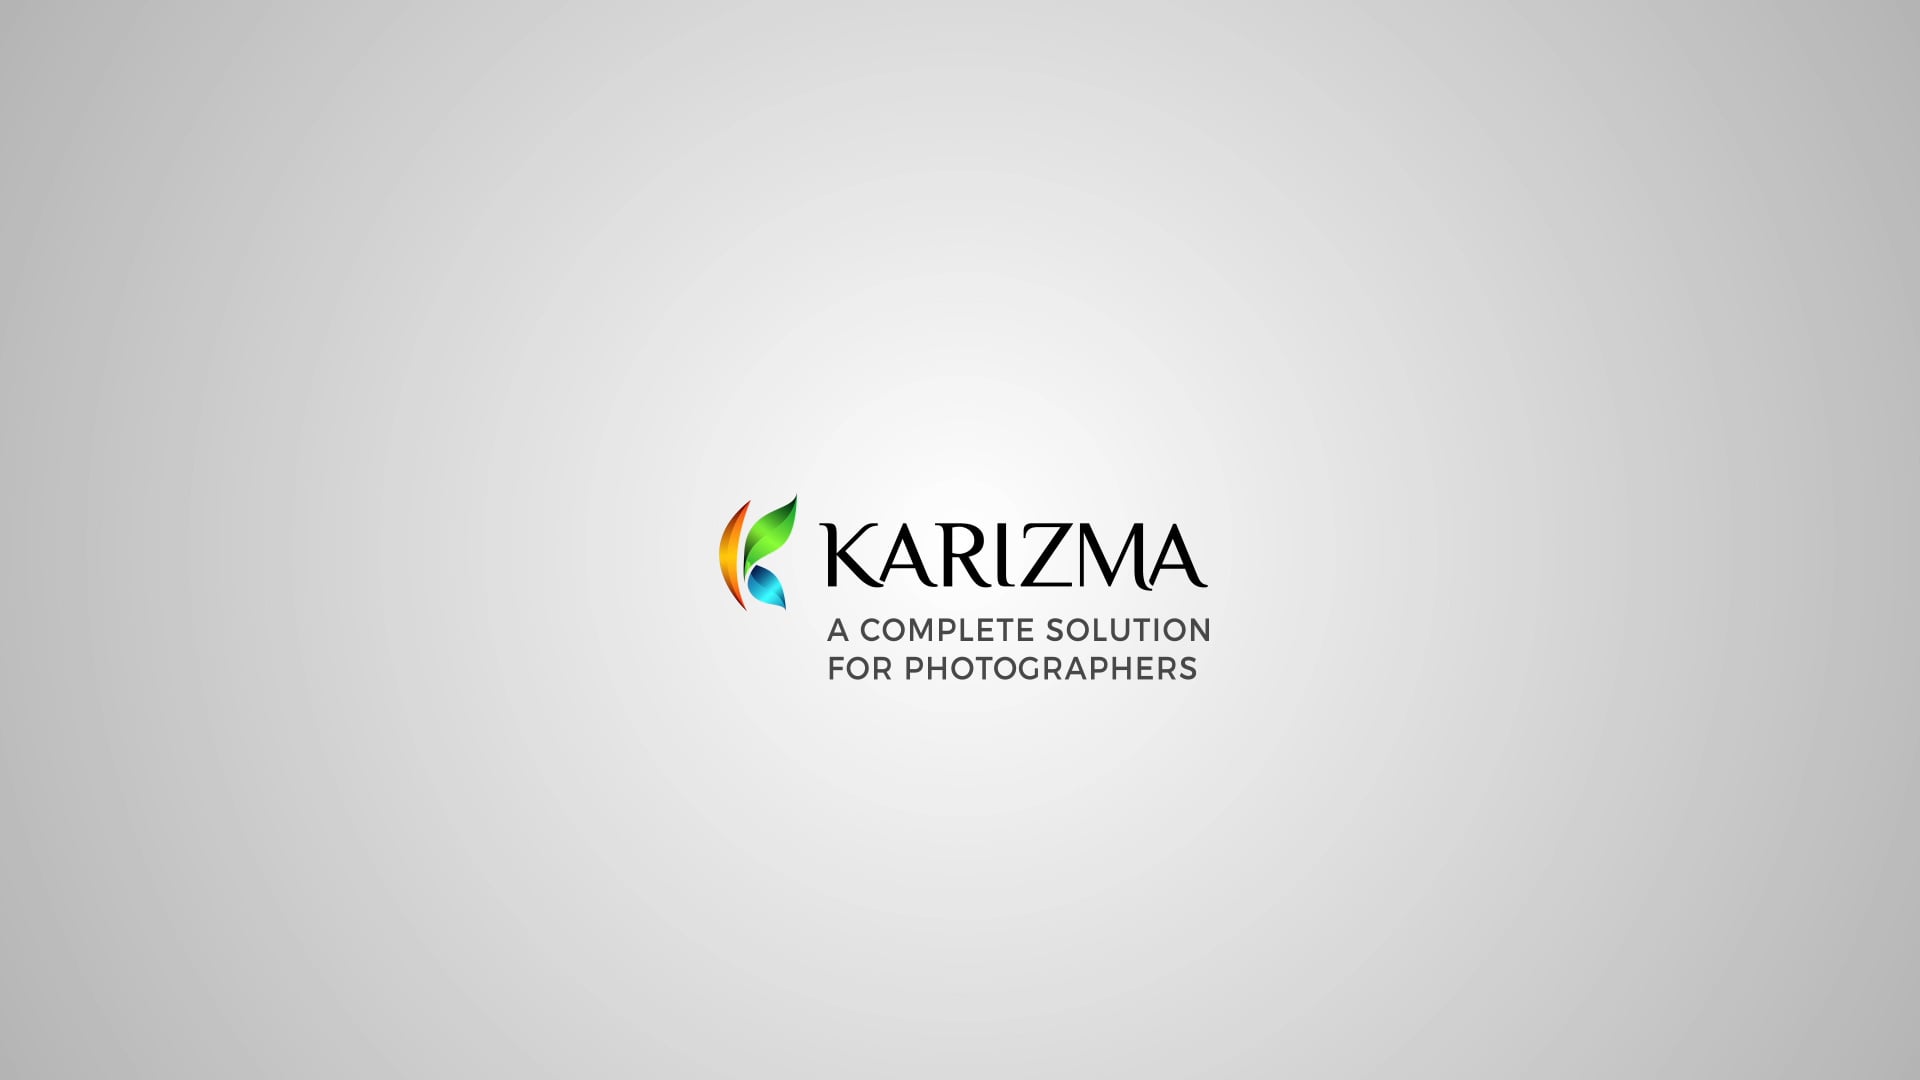 Karizma Logo Animation on Vimeo